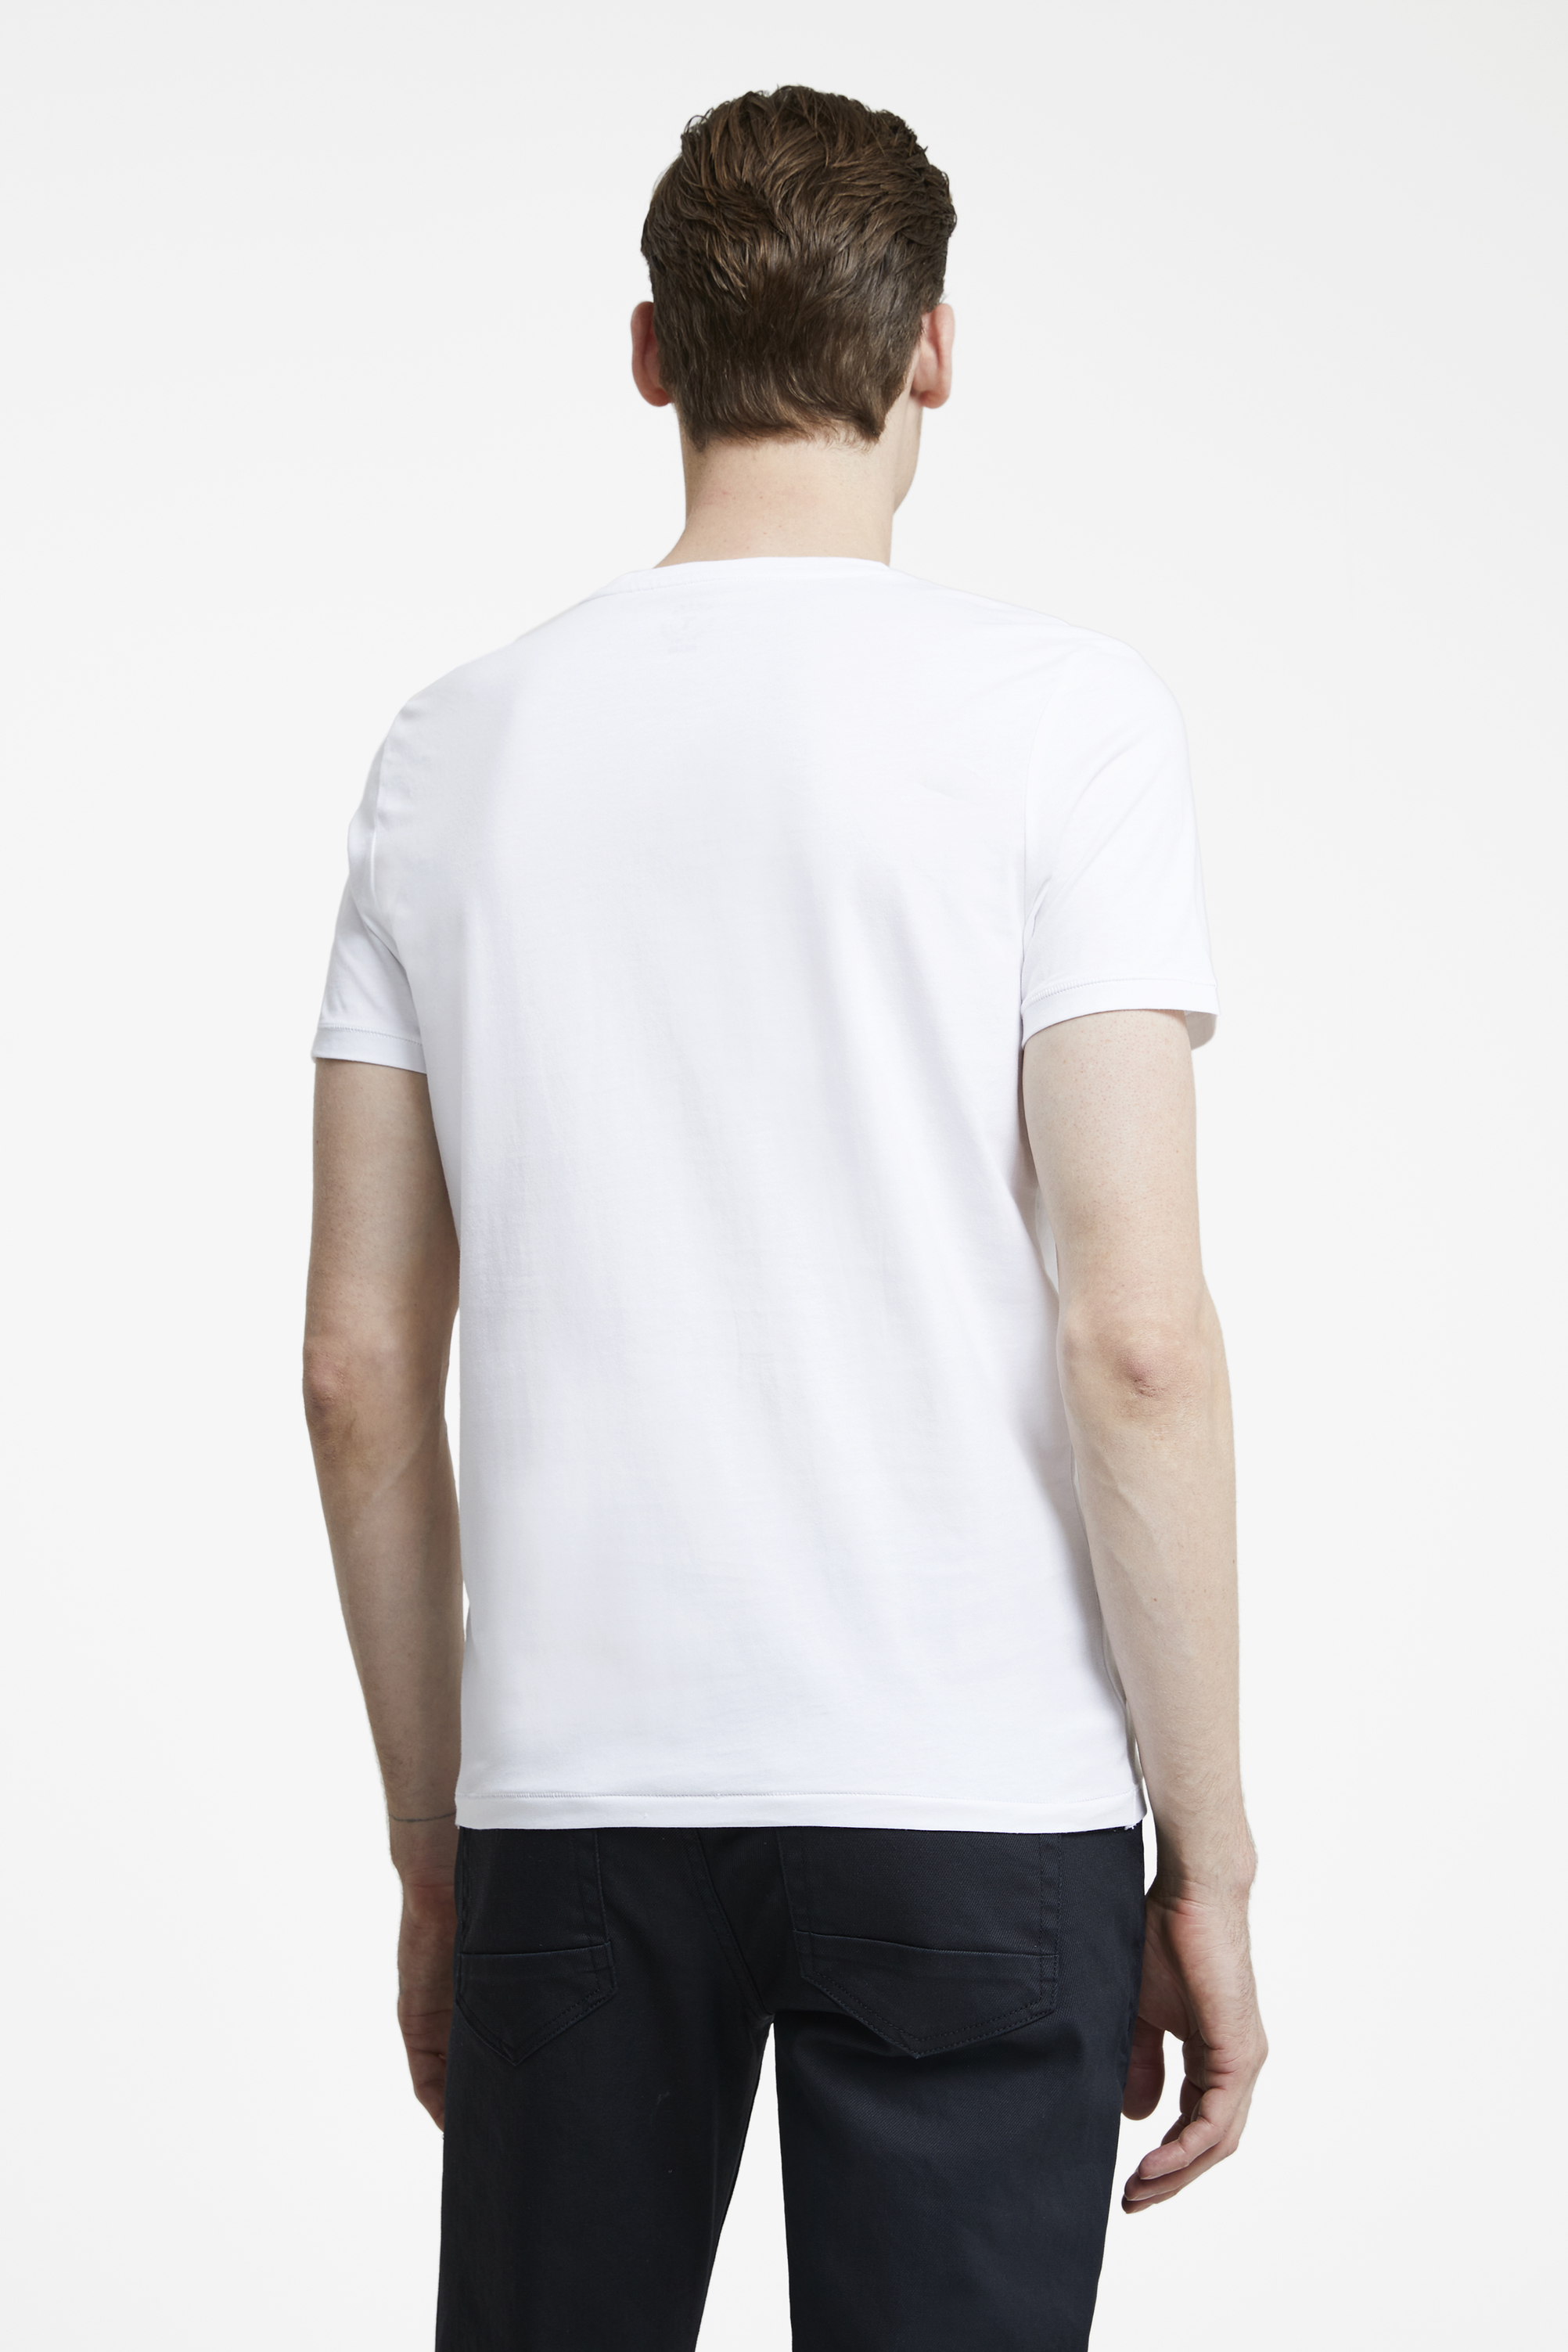 Damat Tween Tween Beyaz T-shirt. 4